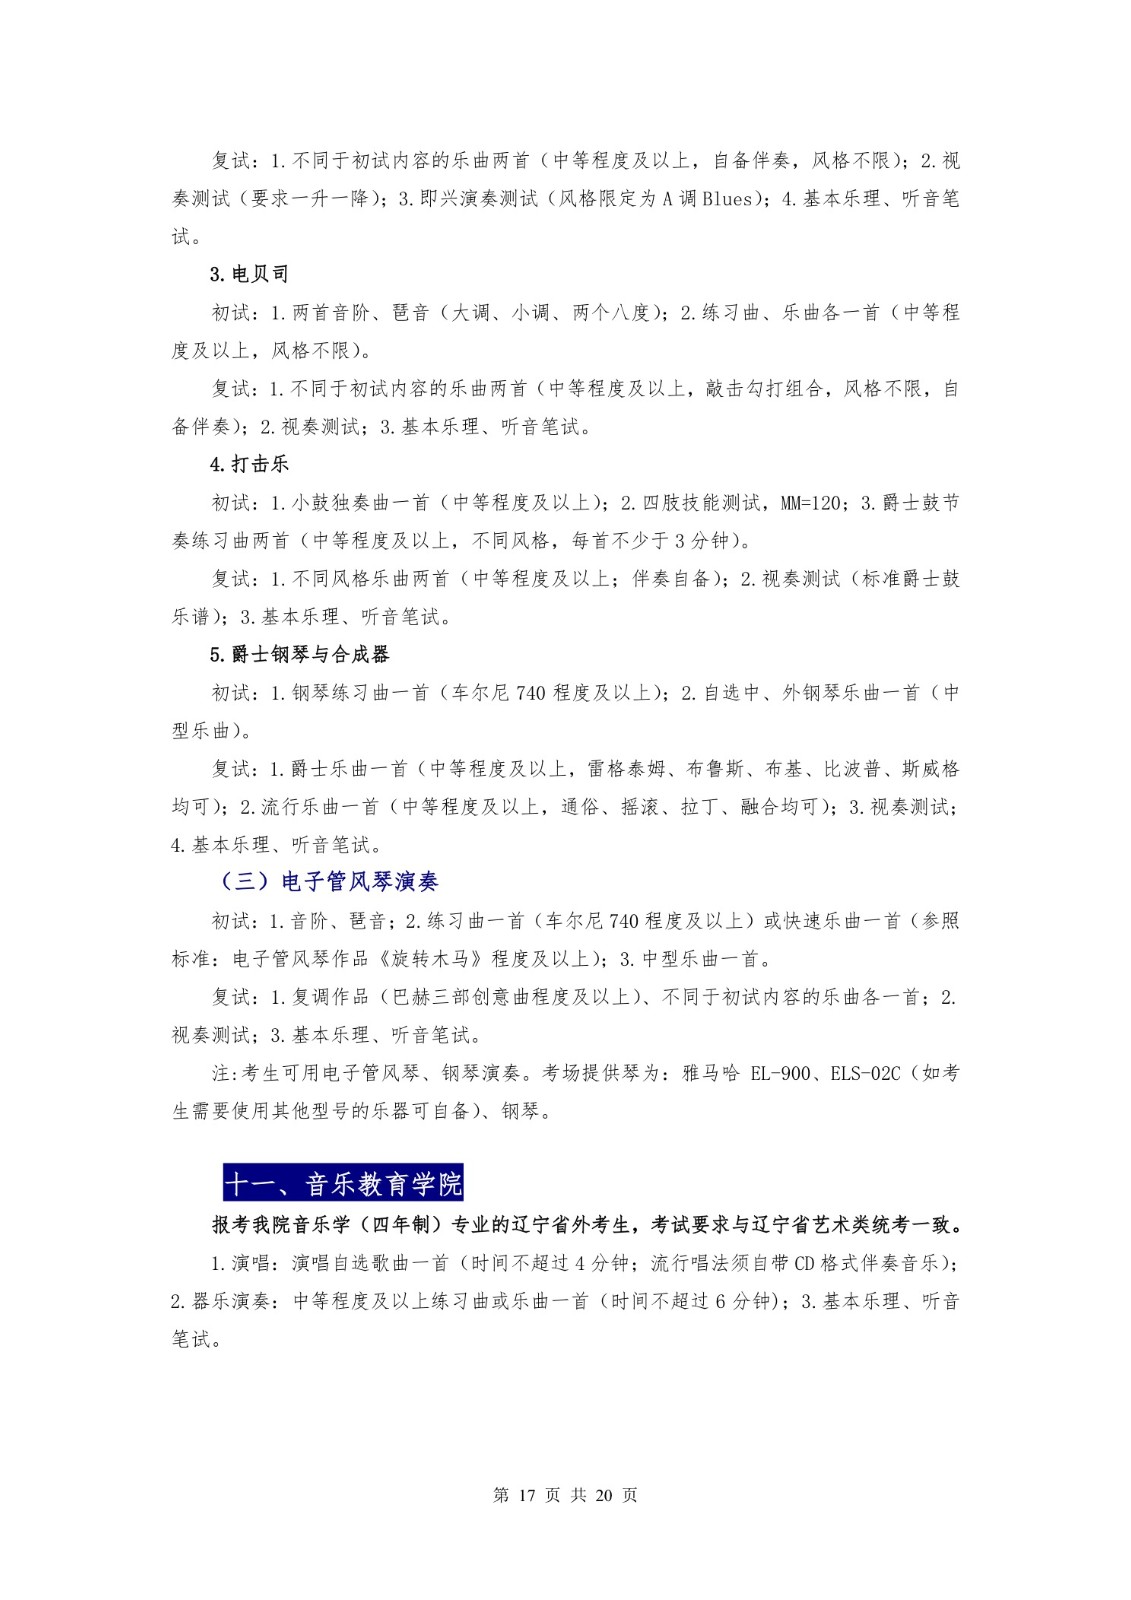 2018年沈阳音乐学院本科招生简章 -page17.jpeg